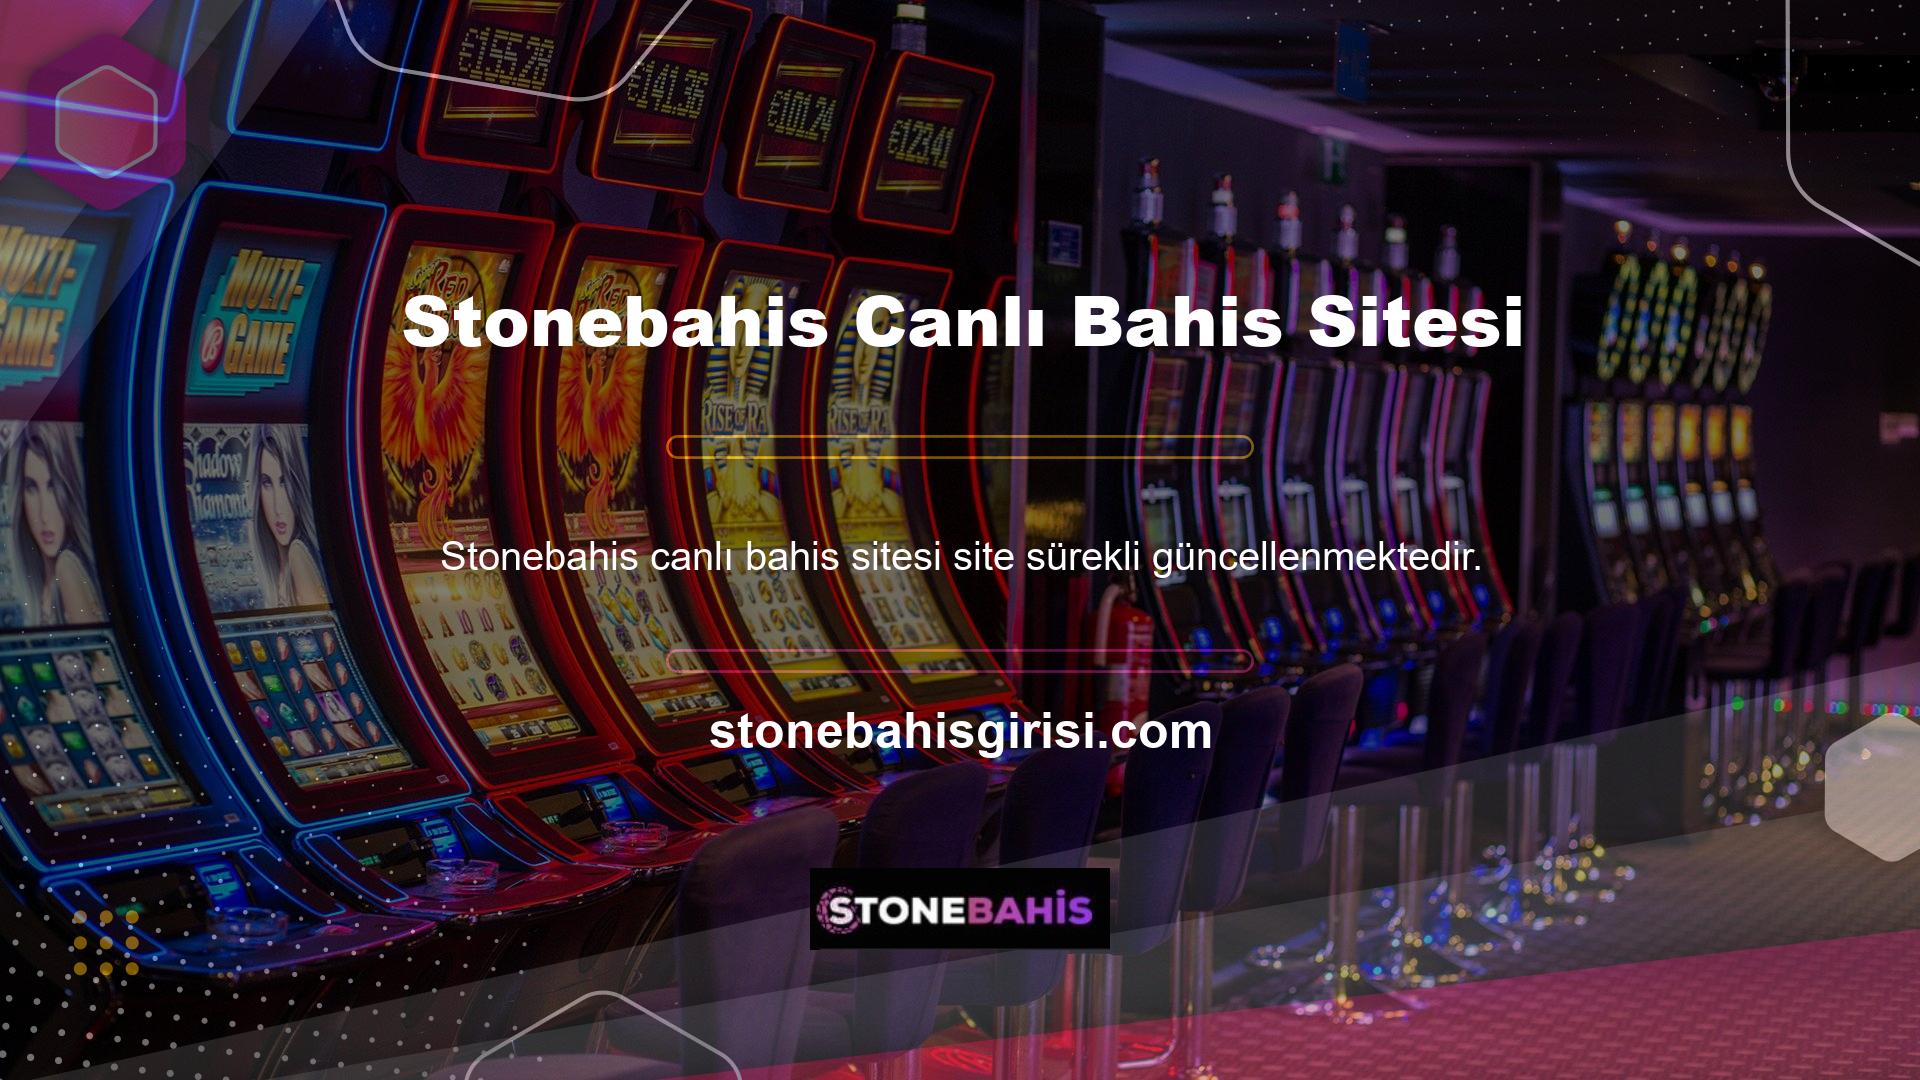 Stonebahis, kolay kayıt ve maksimum getiri ile Türkiye ve yurtdışında uzun soluklu bir platformdur